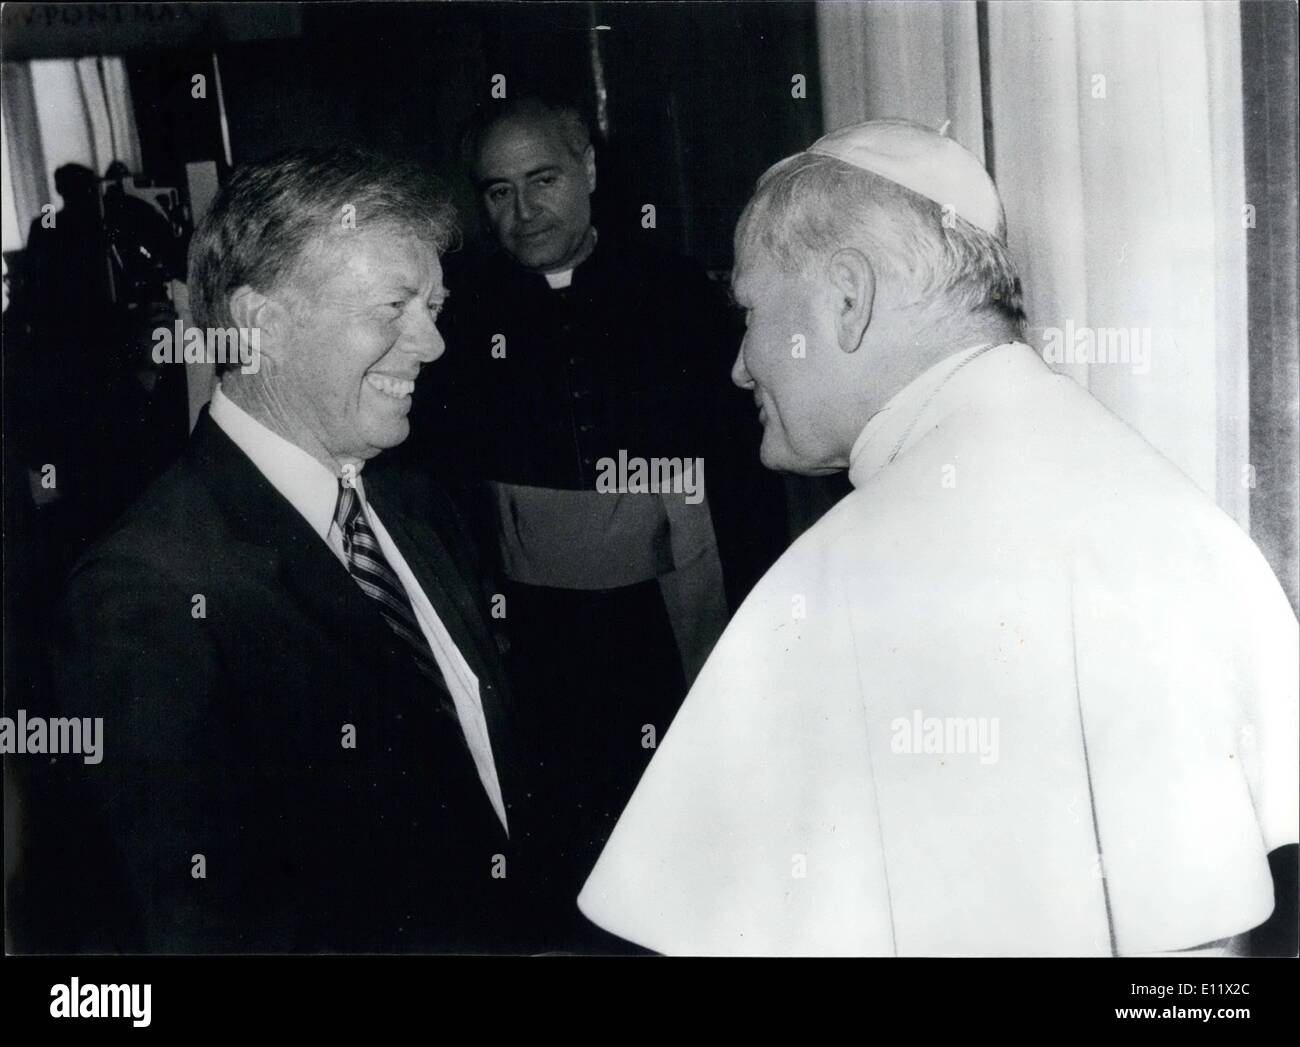 Juin 06, 1980 - Le Président Carter rencontre le pape. La photo montre le président Carter vu lors de sa rencontre avec le Pape Jean Paul II en Banque D'Images